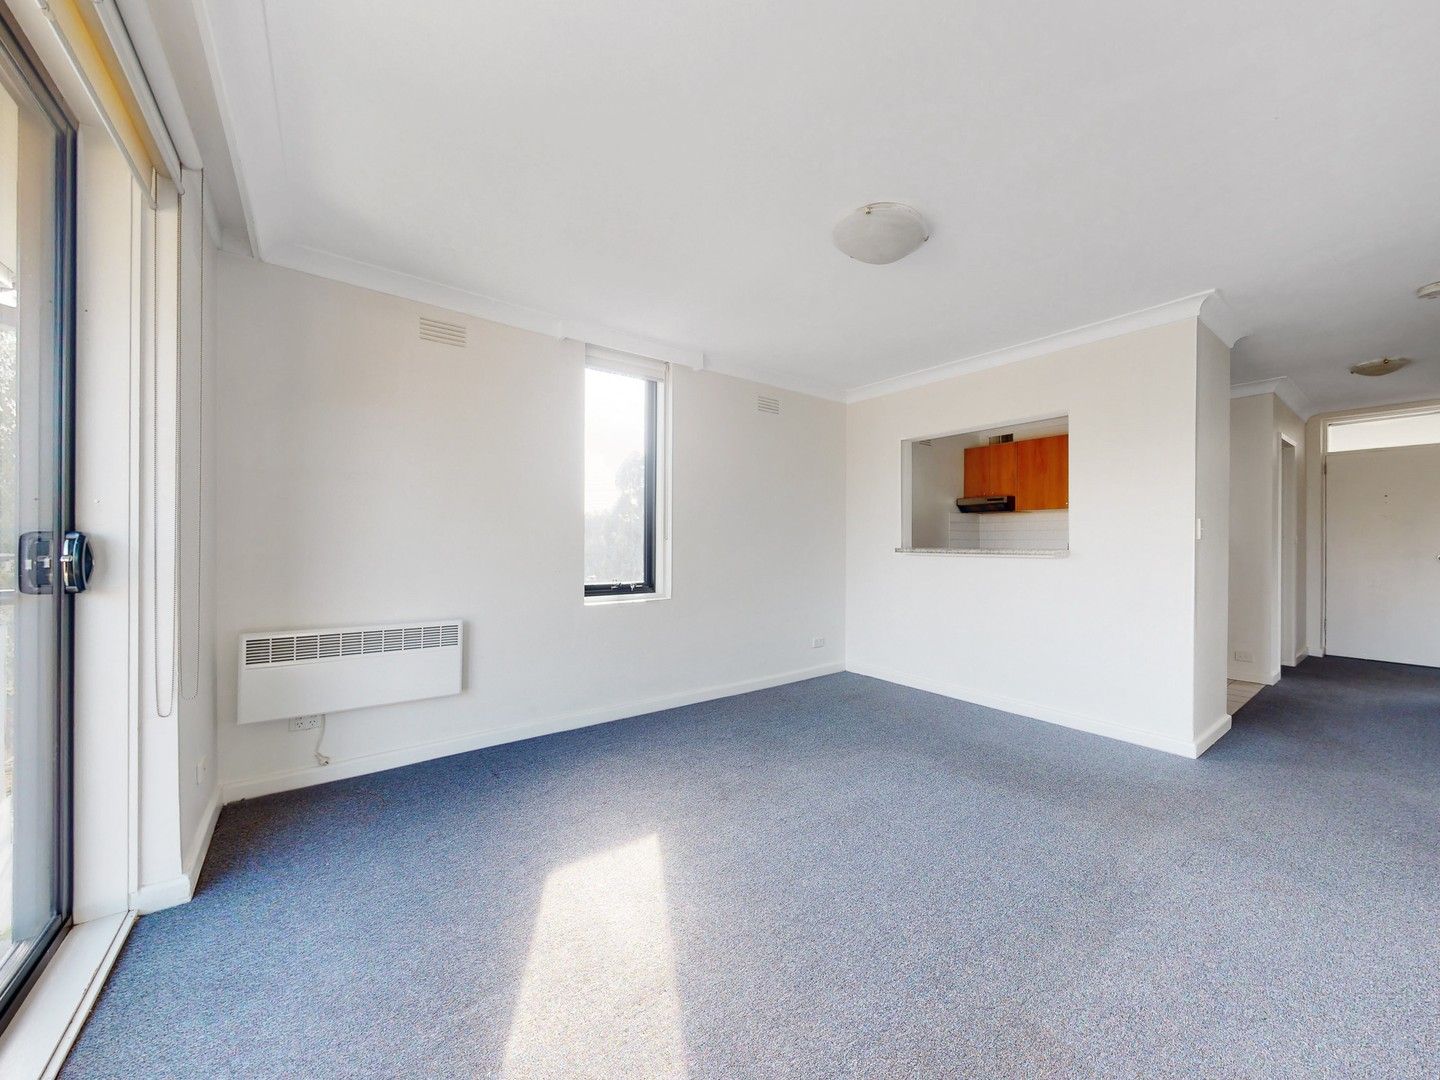 2 bedrooms Apartment / Unit / Flat in 15/69 Carroll Crescent GLEN IRIS VIC, 3146